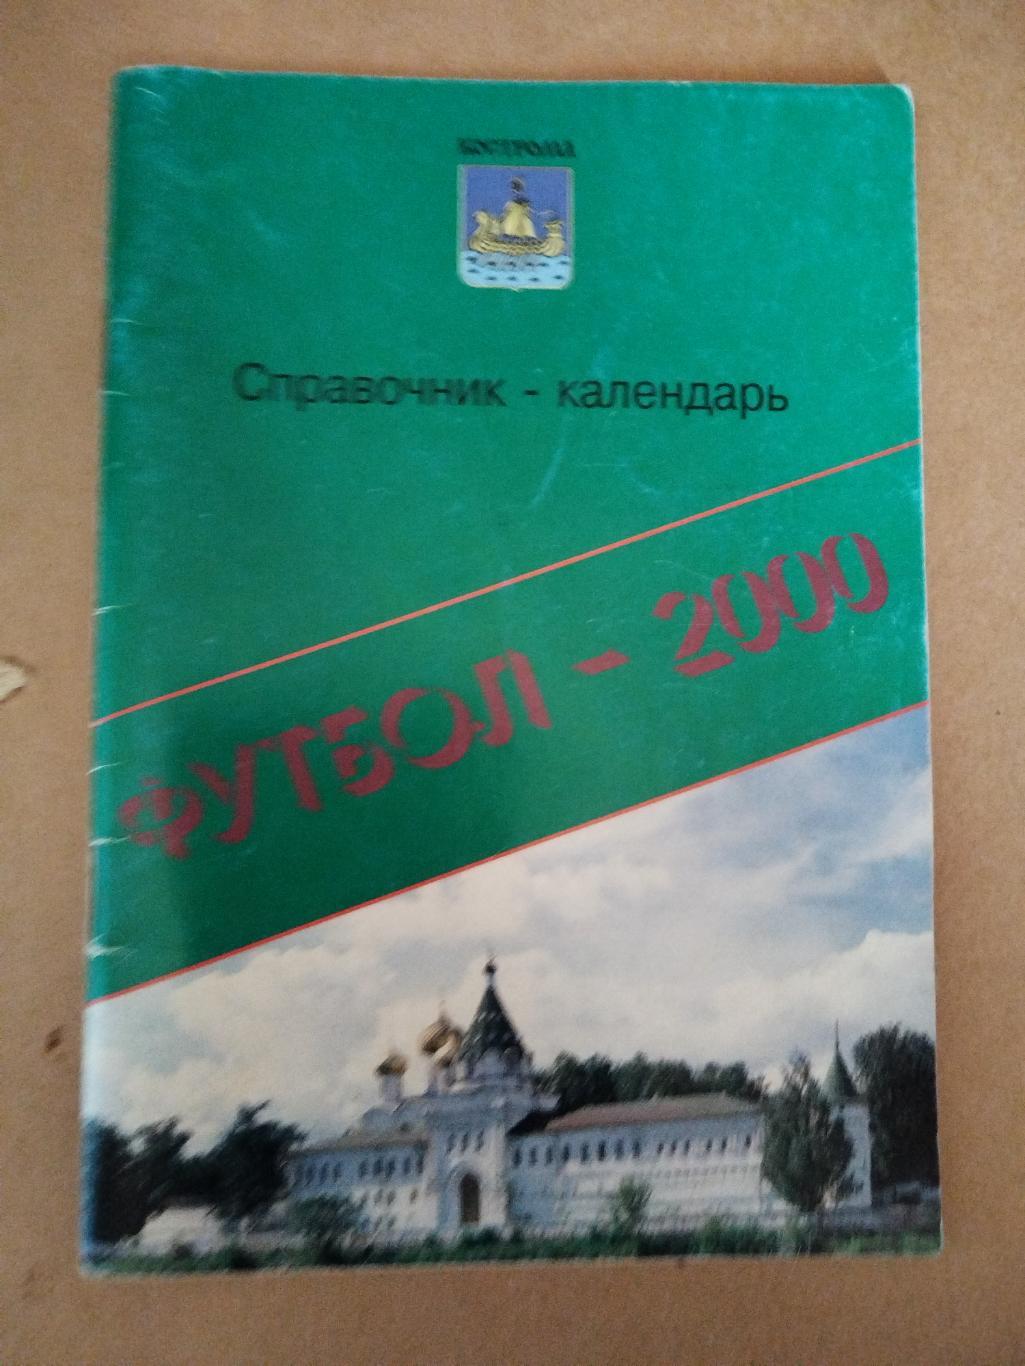 Календарь-справочник Кострома 2000